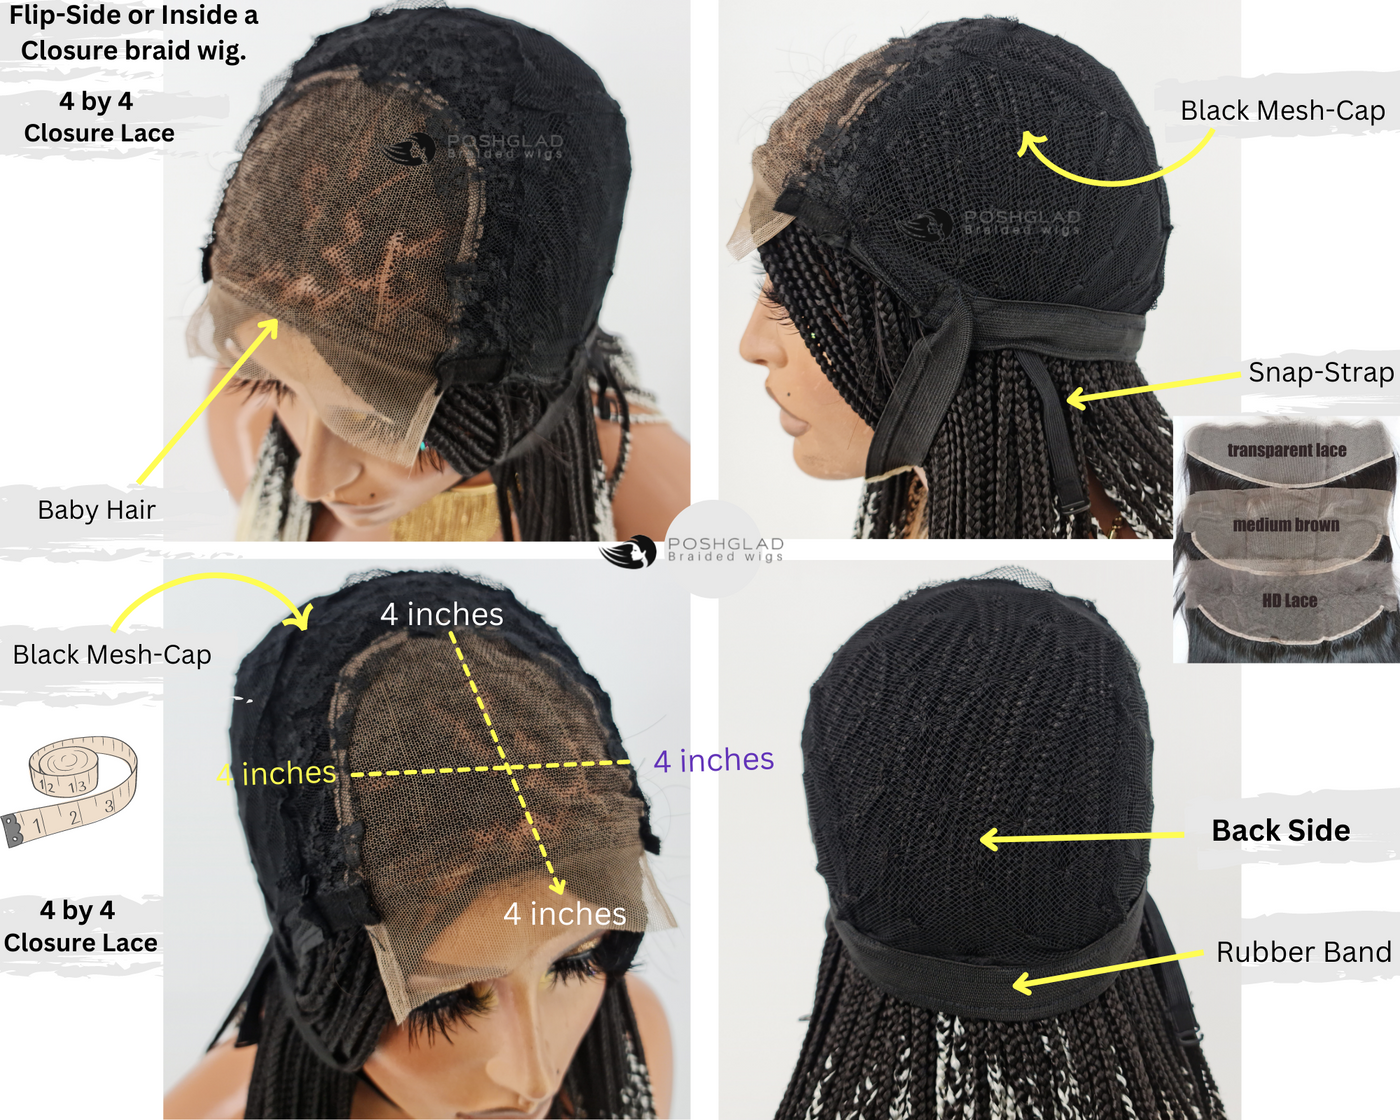 Spring Twist Wig In 4 By 4 Closure - Olabisi Poshglad Braided Wigs Spring twist wig